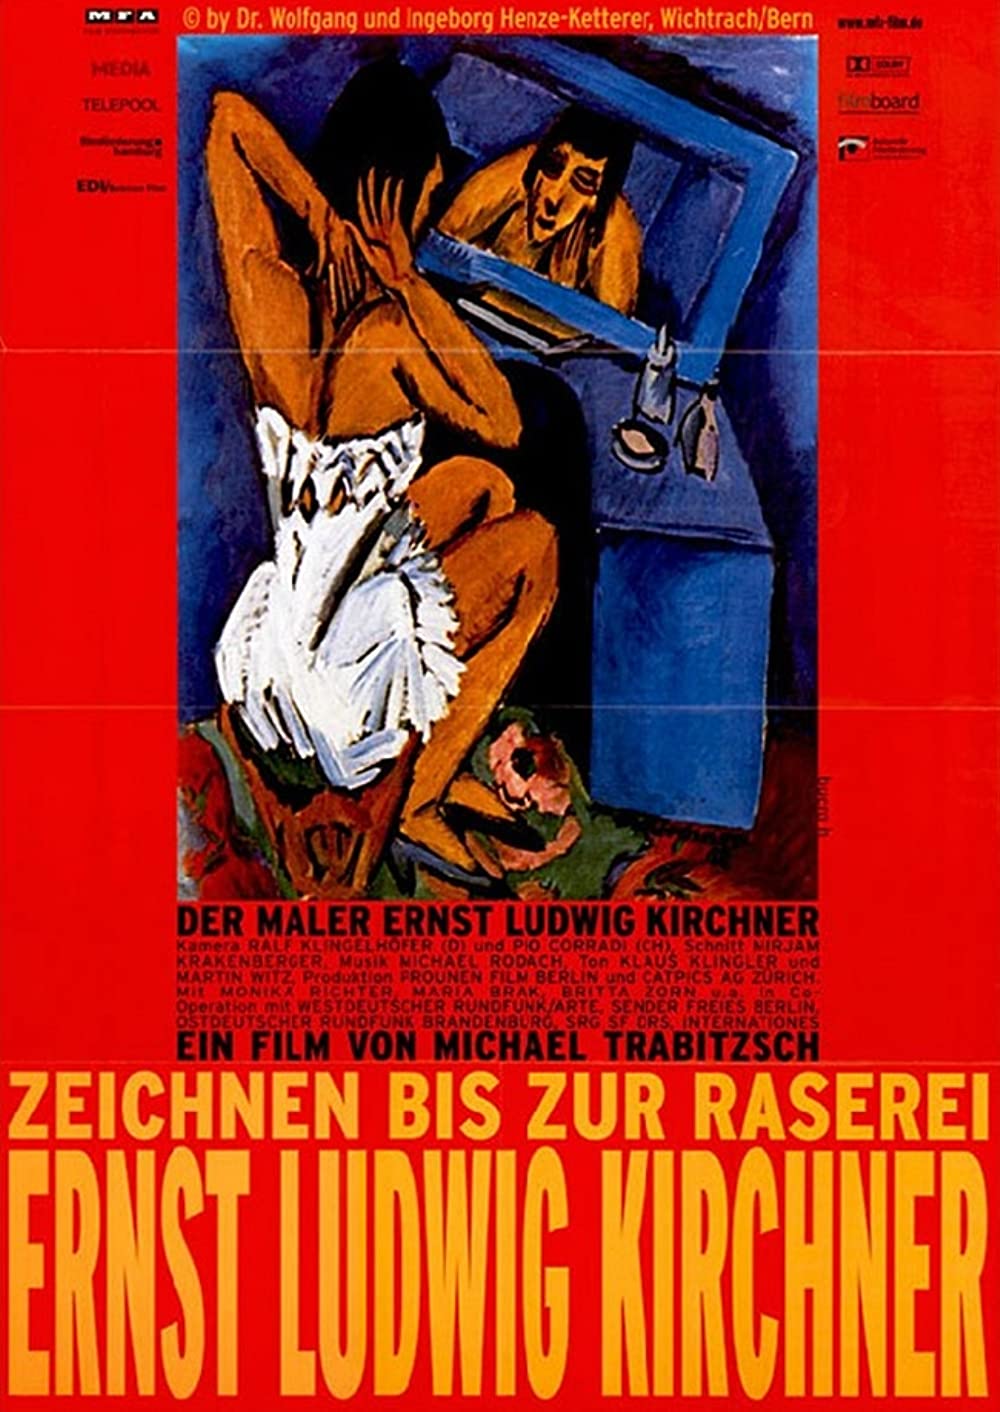 Filmbeschreibung zu Zeichnen bis zur Raserei - Der Maler Ernst Ludwig Kirchner